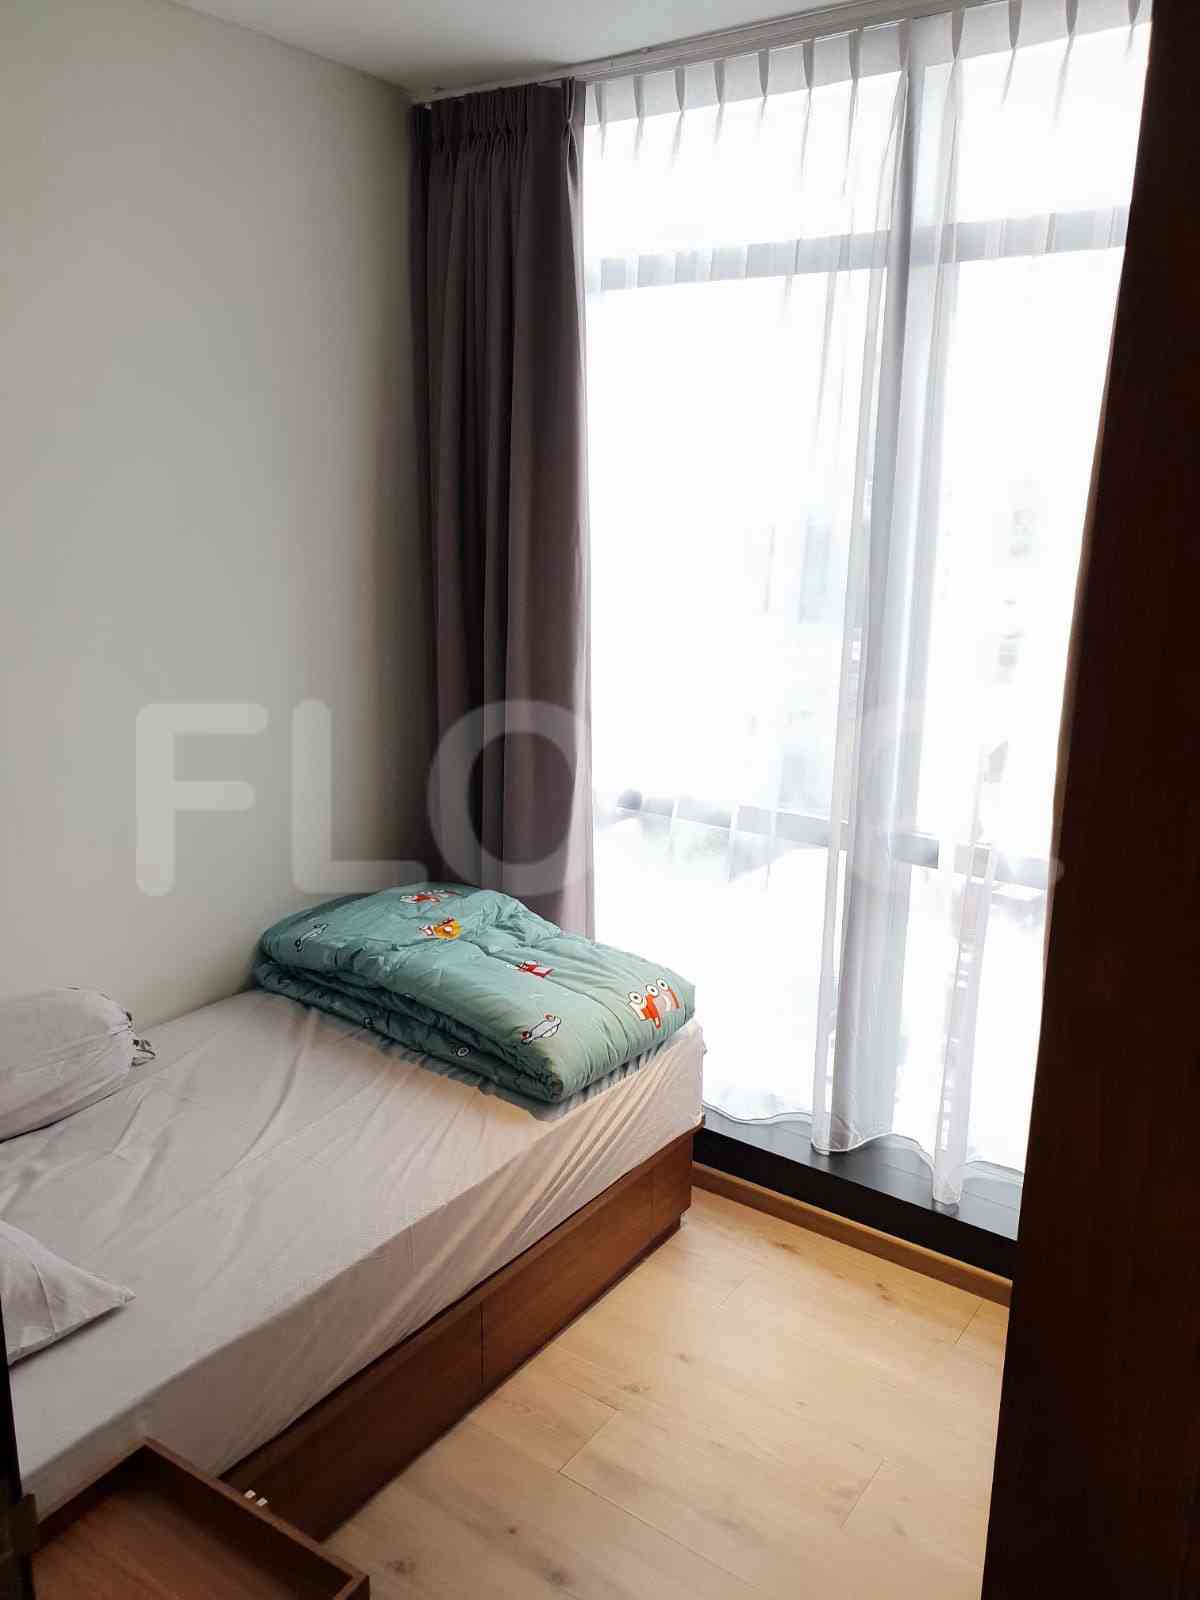 2 Bedroom on 6th Floor for Rent in Sudirman Suites Jakarta - fsud5c 2